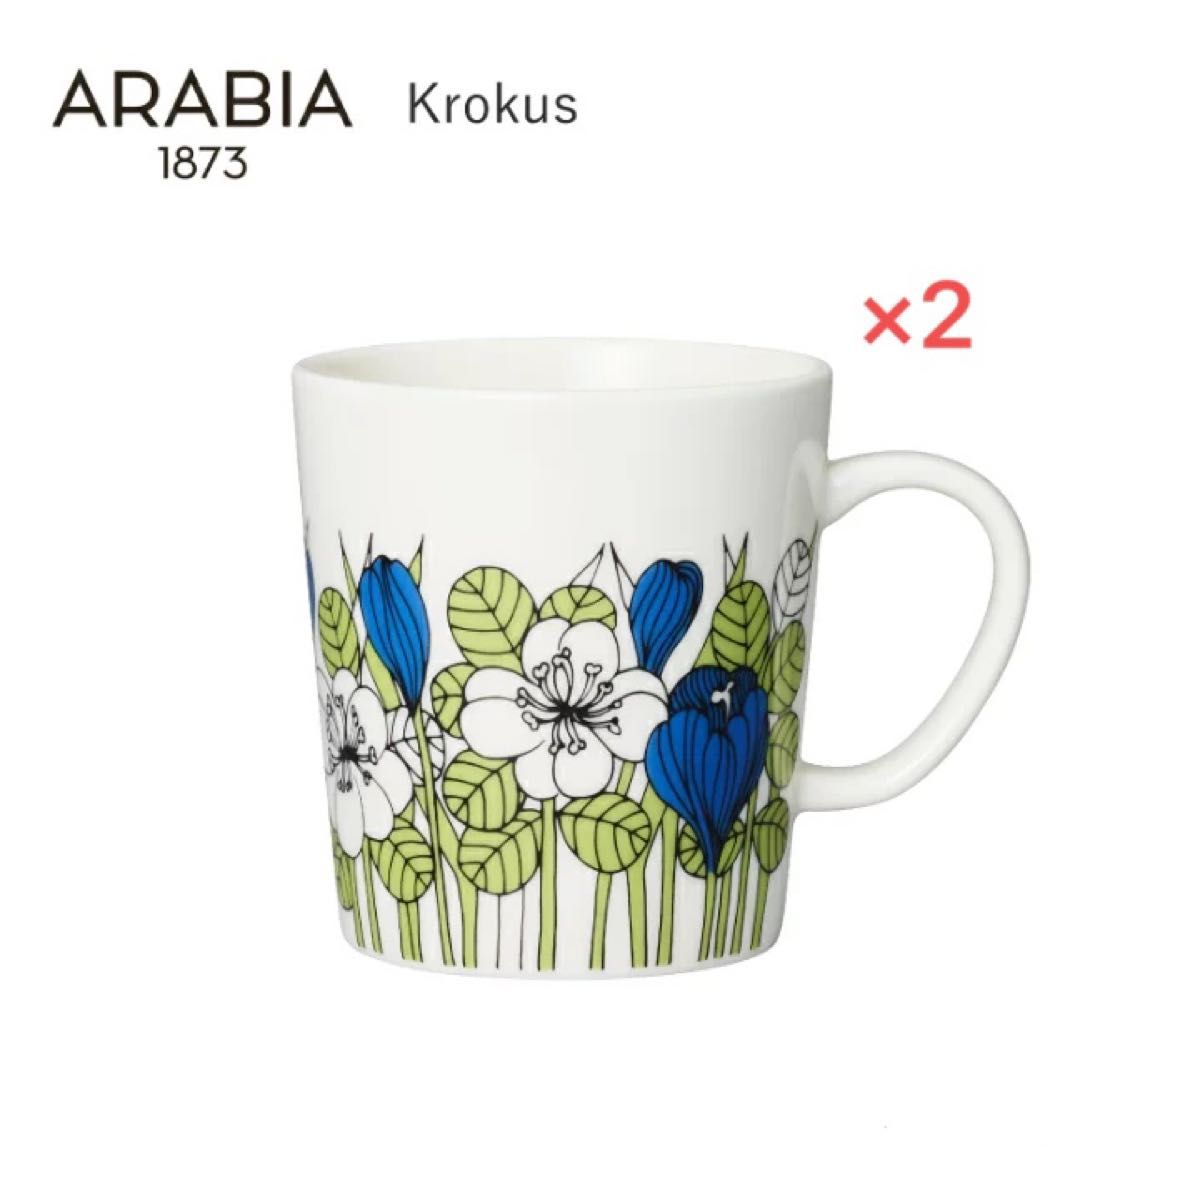 【新品未開封】アラビア クロッカス グリーン マグ 0.3L 2個セット ARABIA Krokus 北欧雑貨 食器